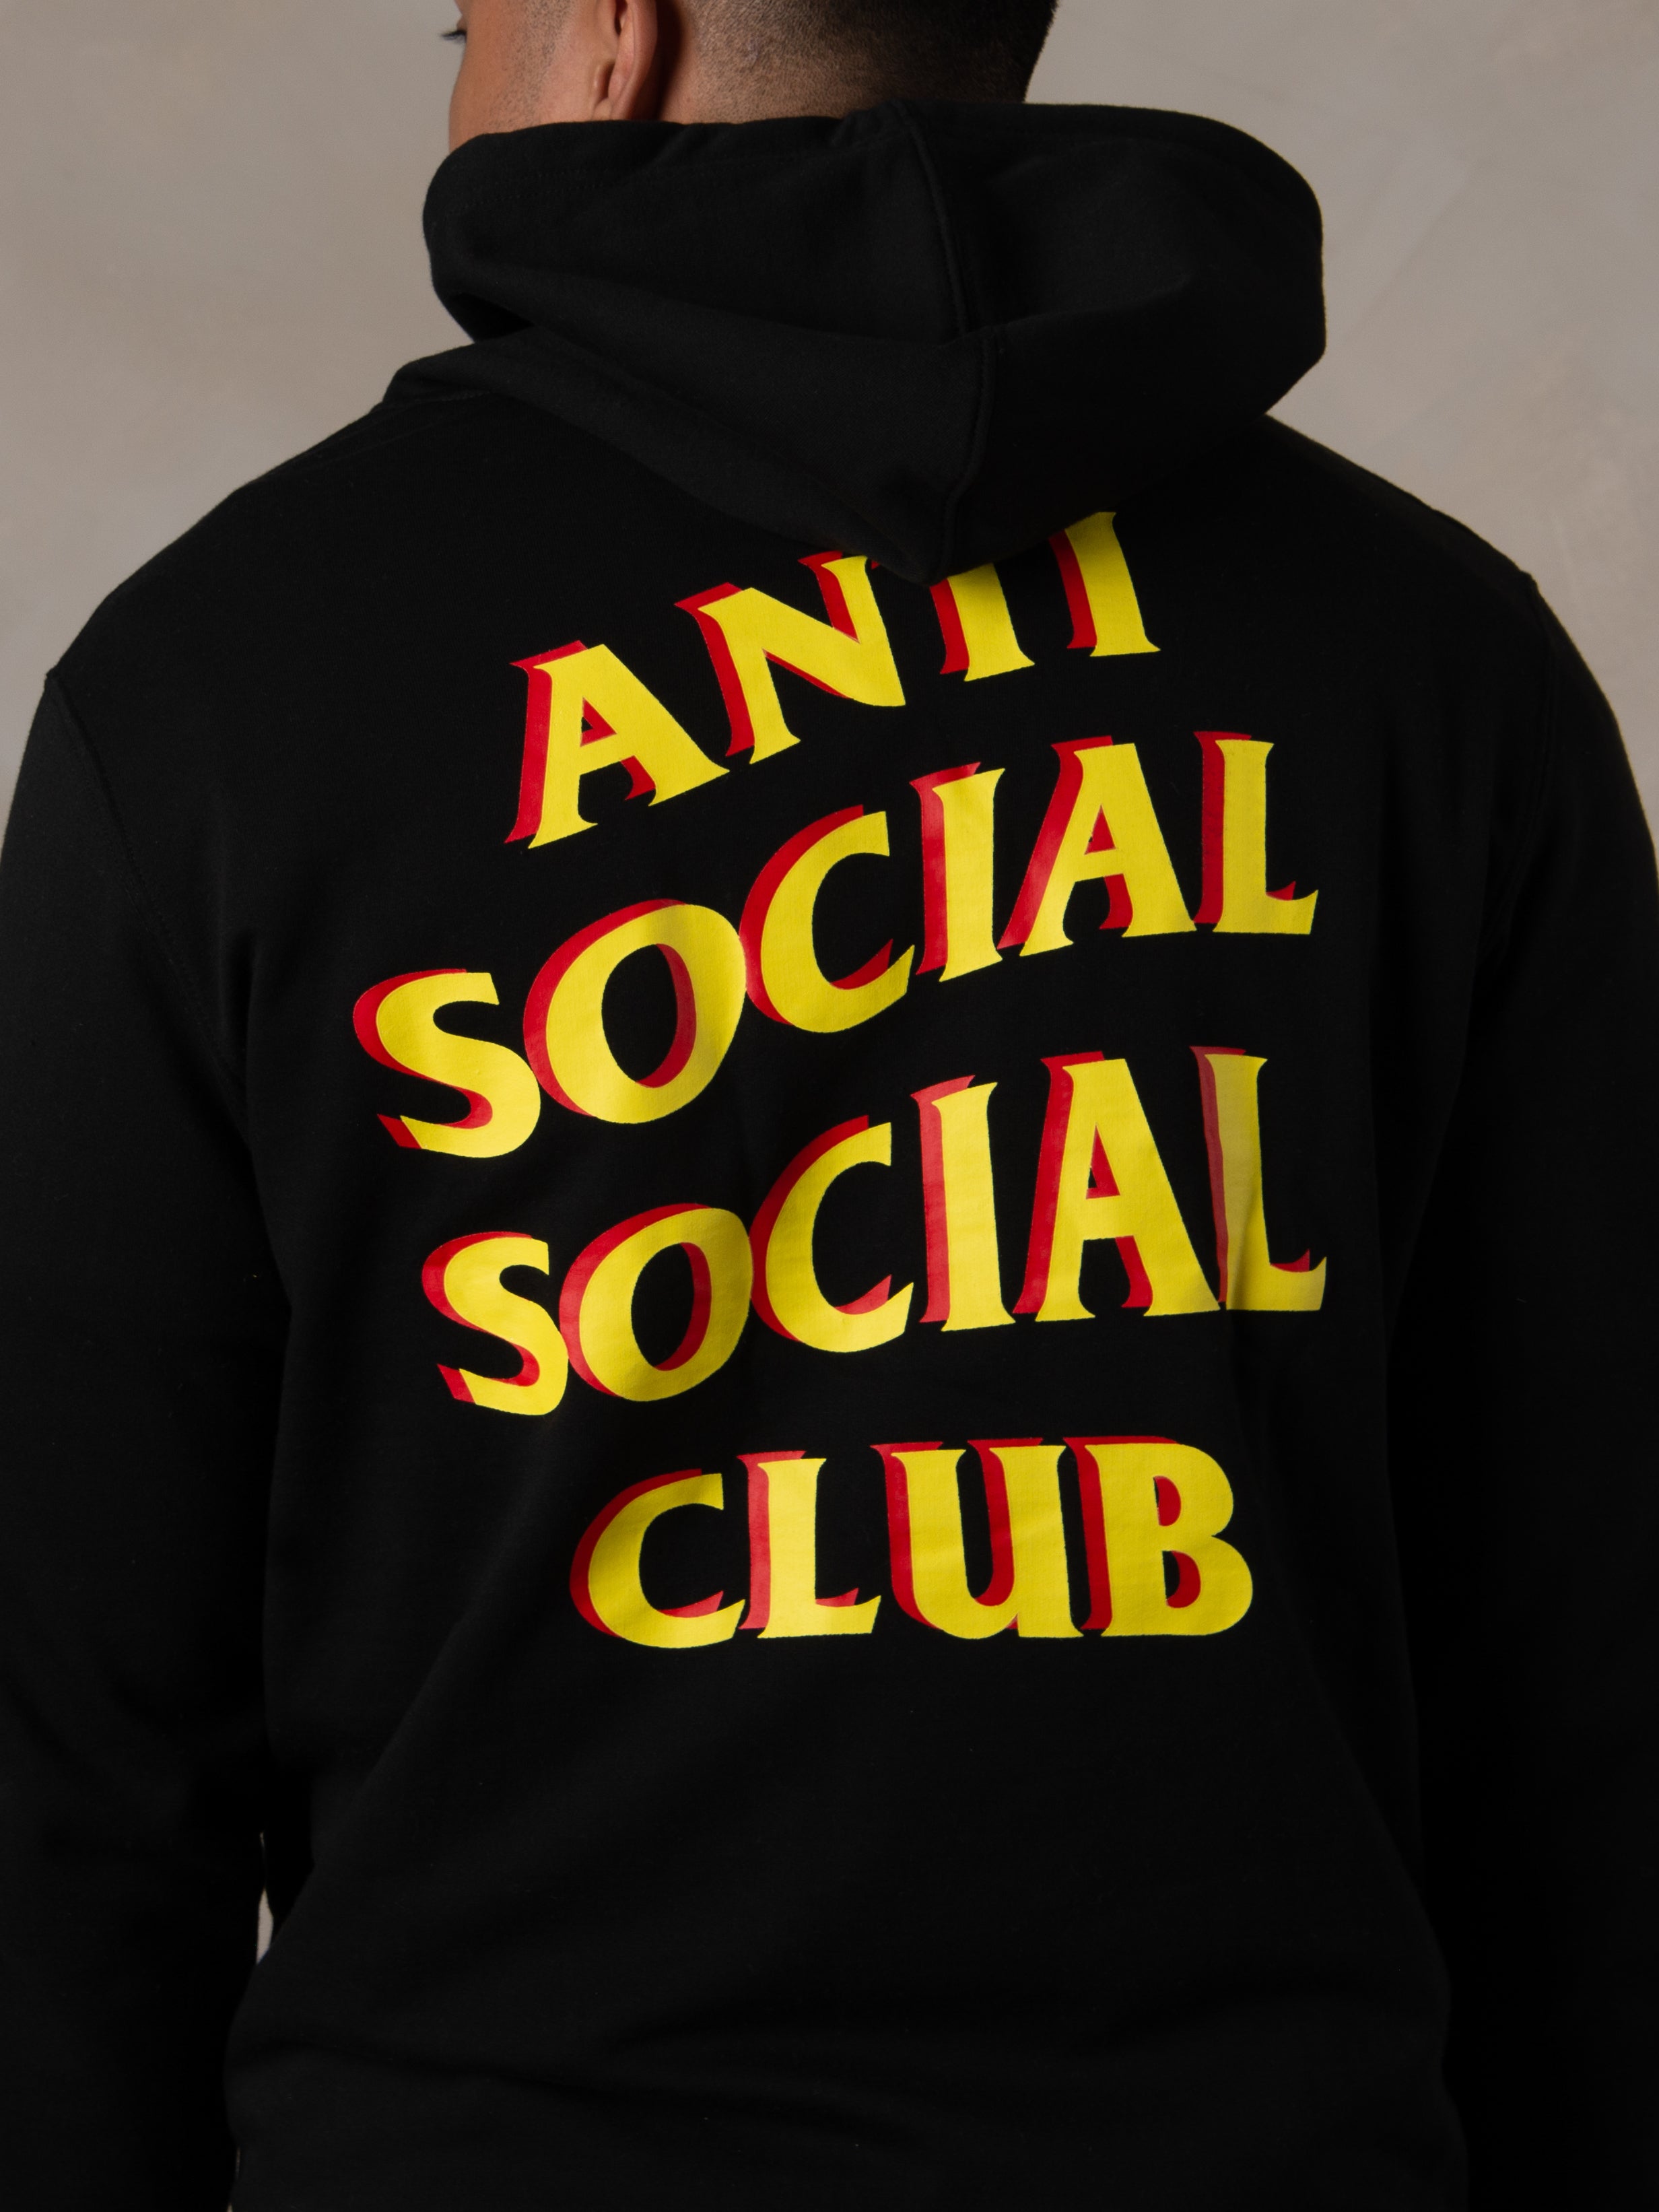 CLUB SOCIAL ANTISOCIAL - UNIQUE EN SON GENRE